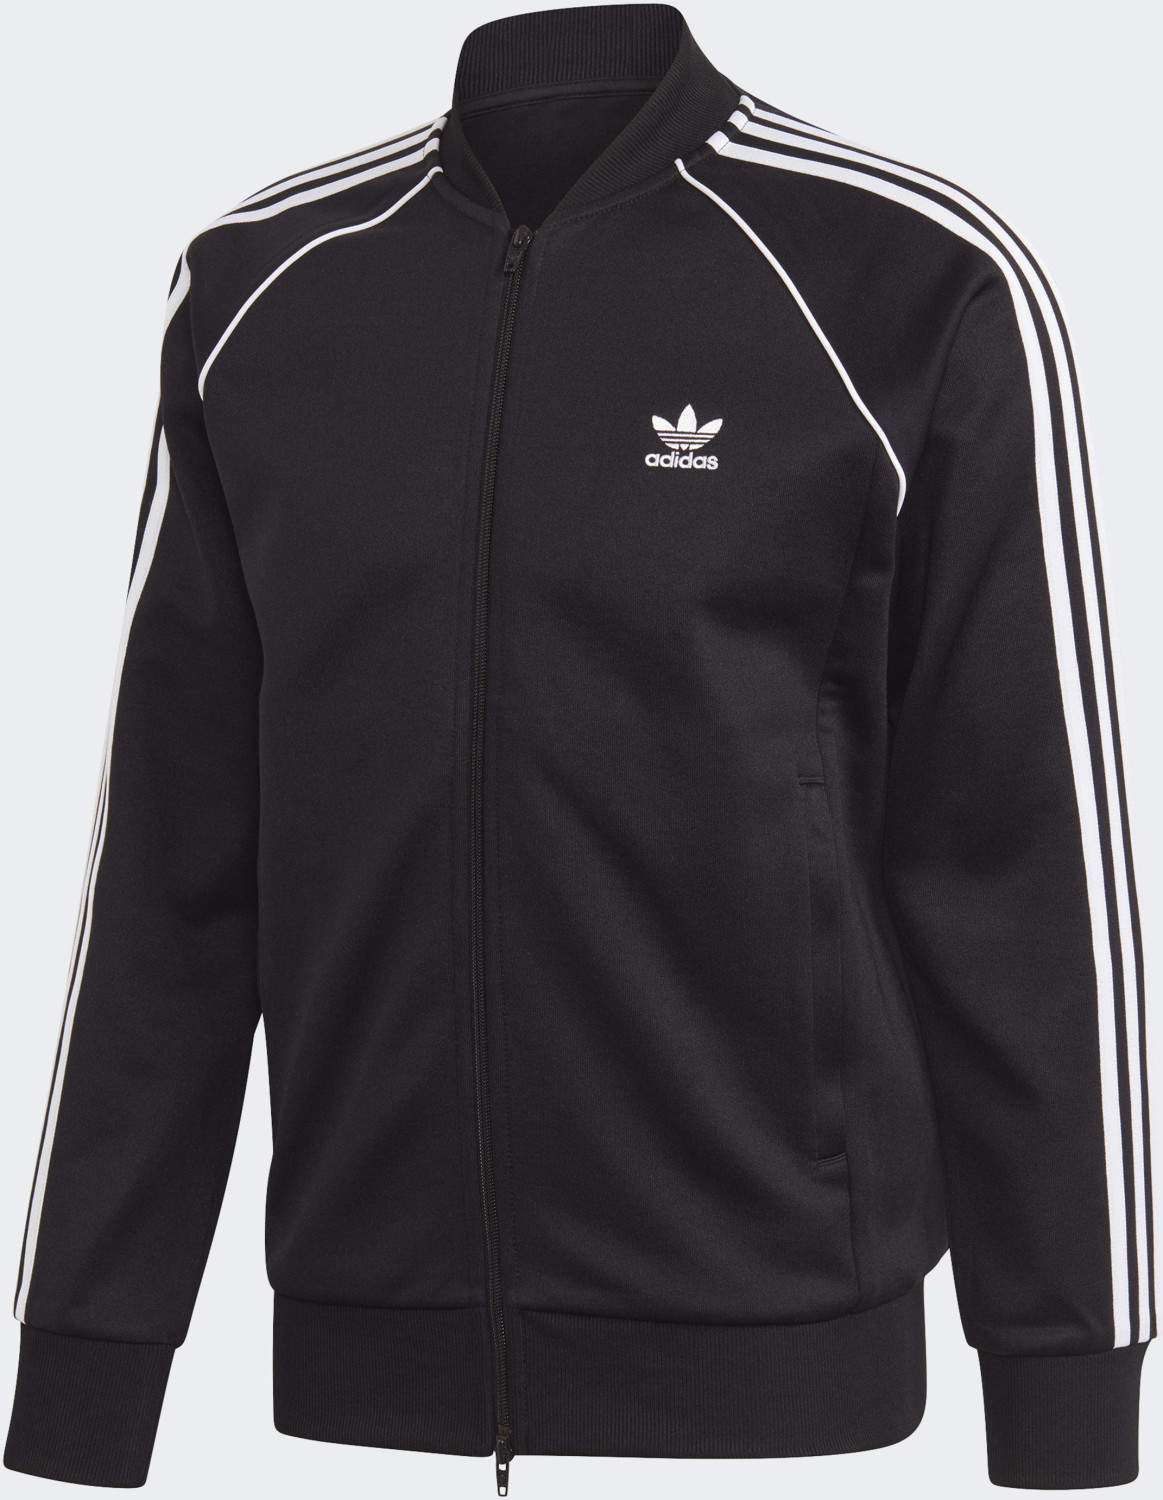 Image of Adidas Adicolor Classics Primeblue SST Originals Jacket black/white (GF0198)